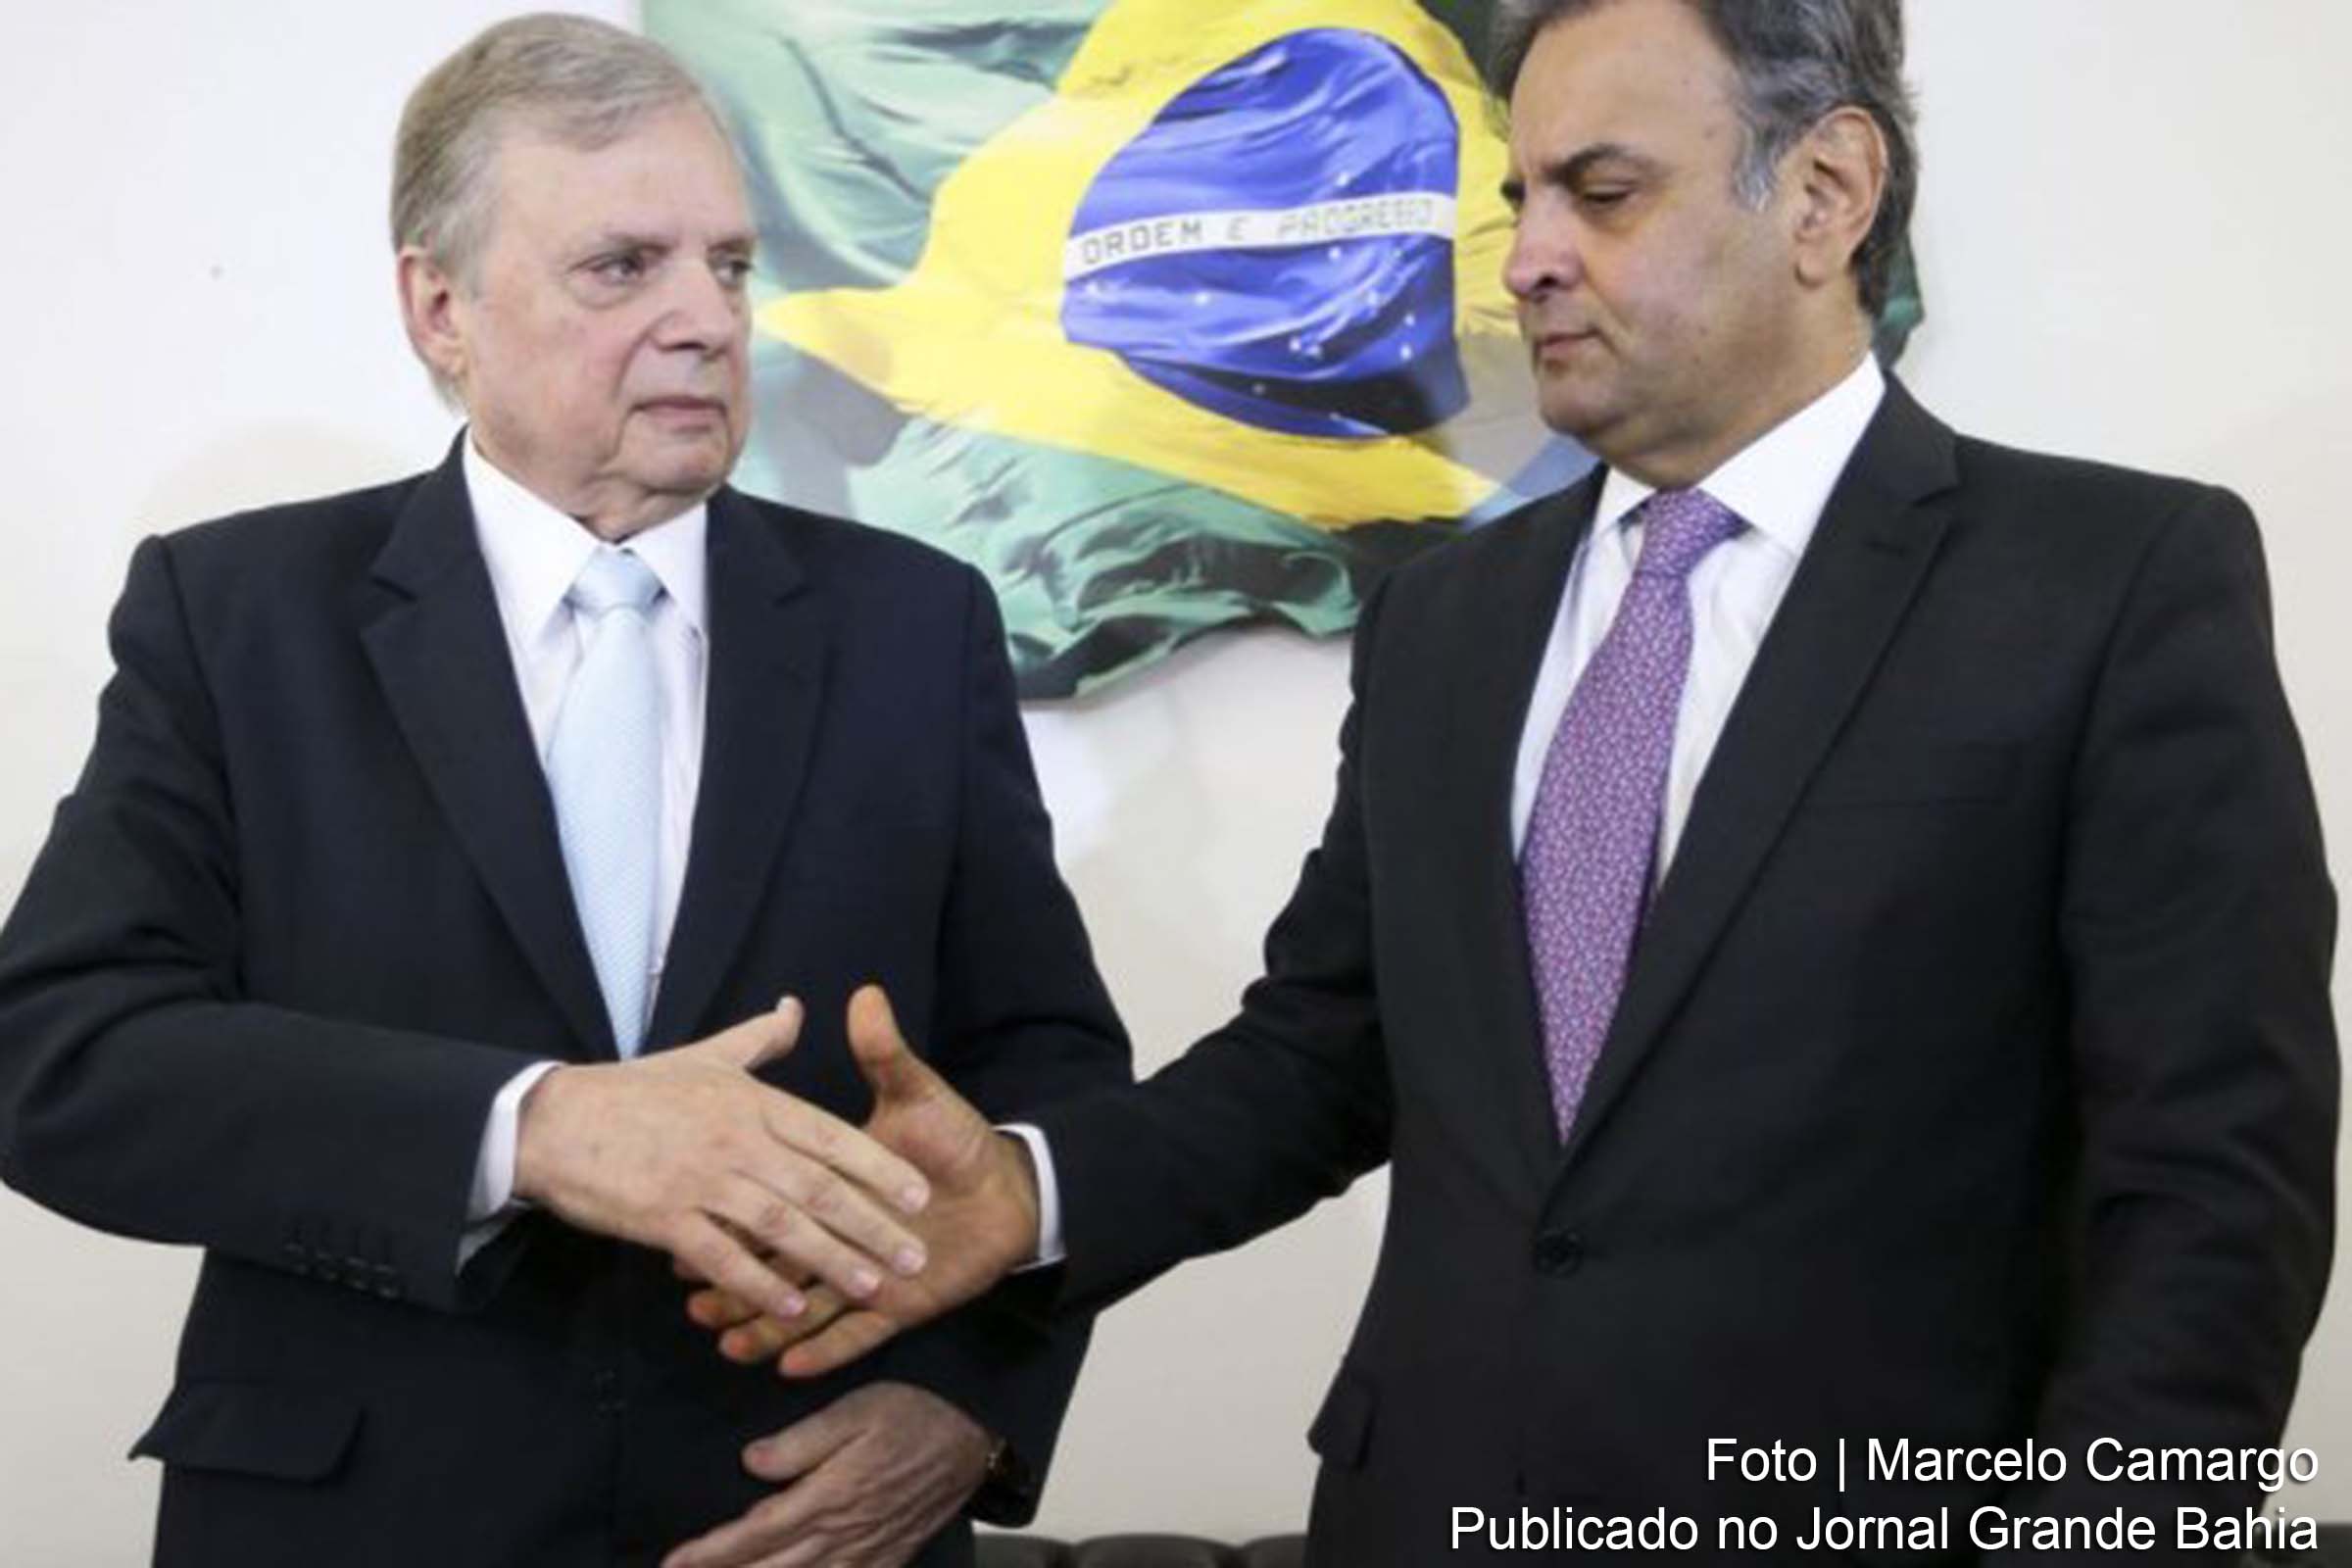 Senadores do PSDB Tasso Jereissati e Aécio Neves. Usurpação democrática e corrupção conduz partido ao fracasso eleitoral.